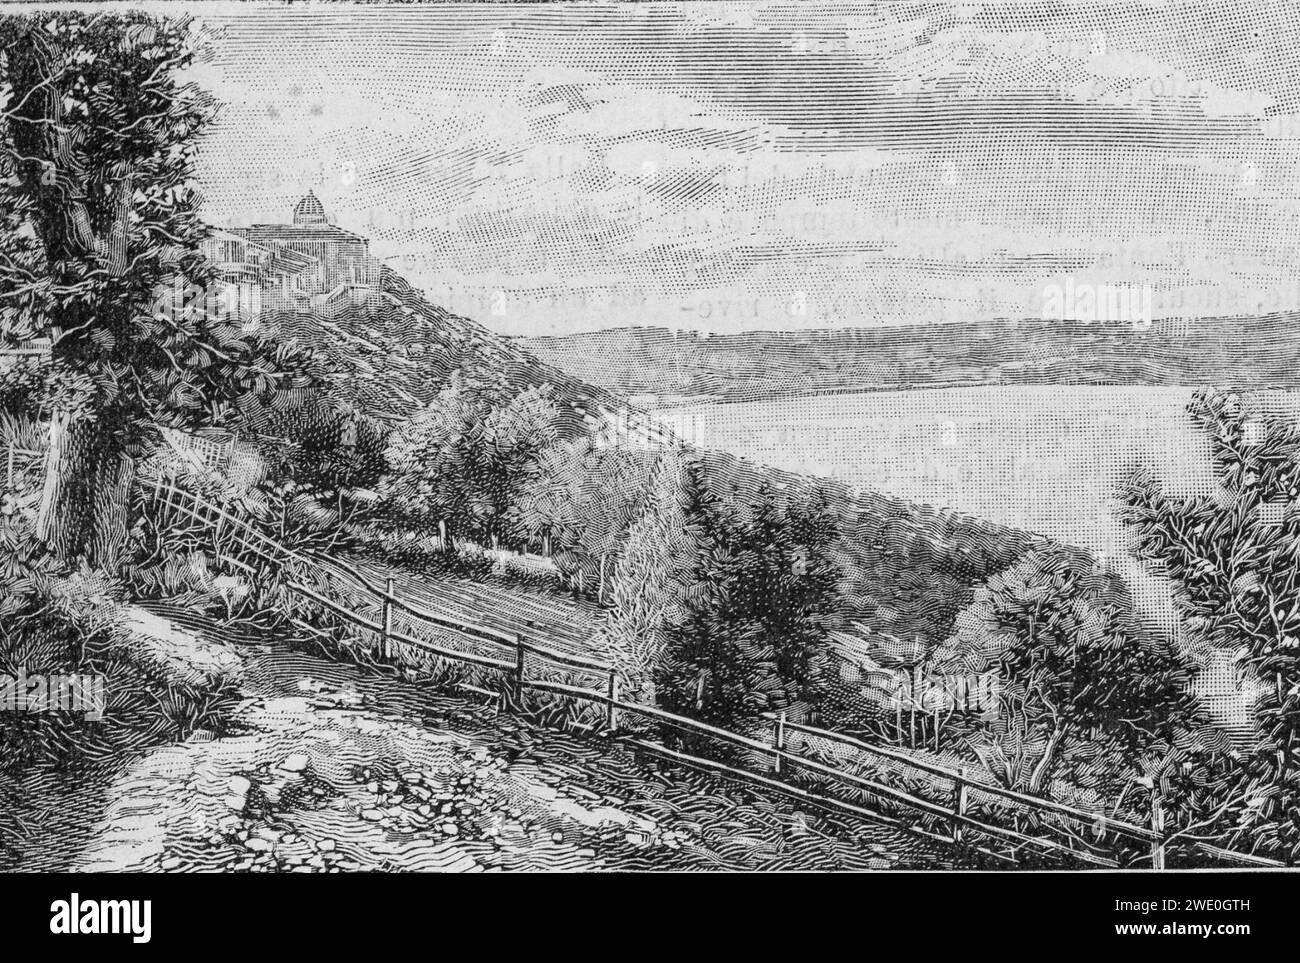 Albano, il lago con veduta di Castelgandolfo (xilografia). Stock Photo